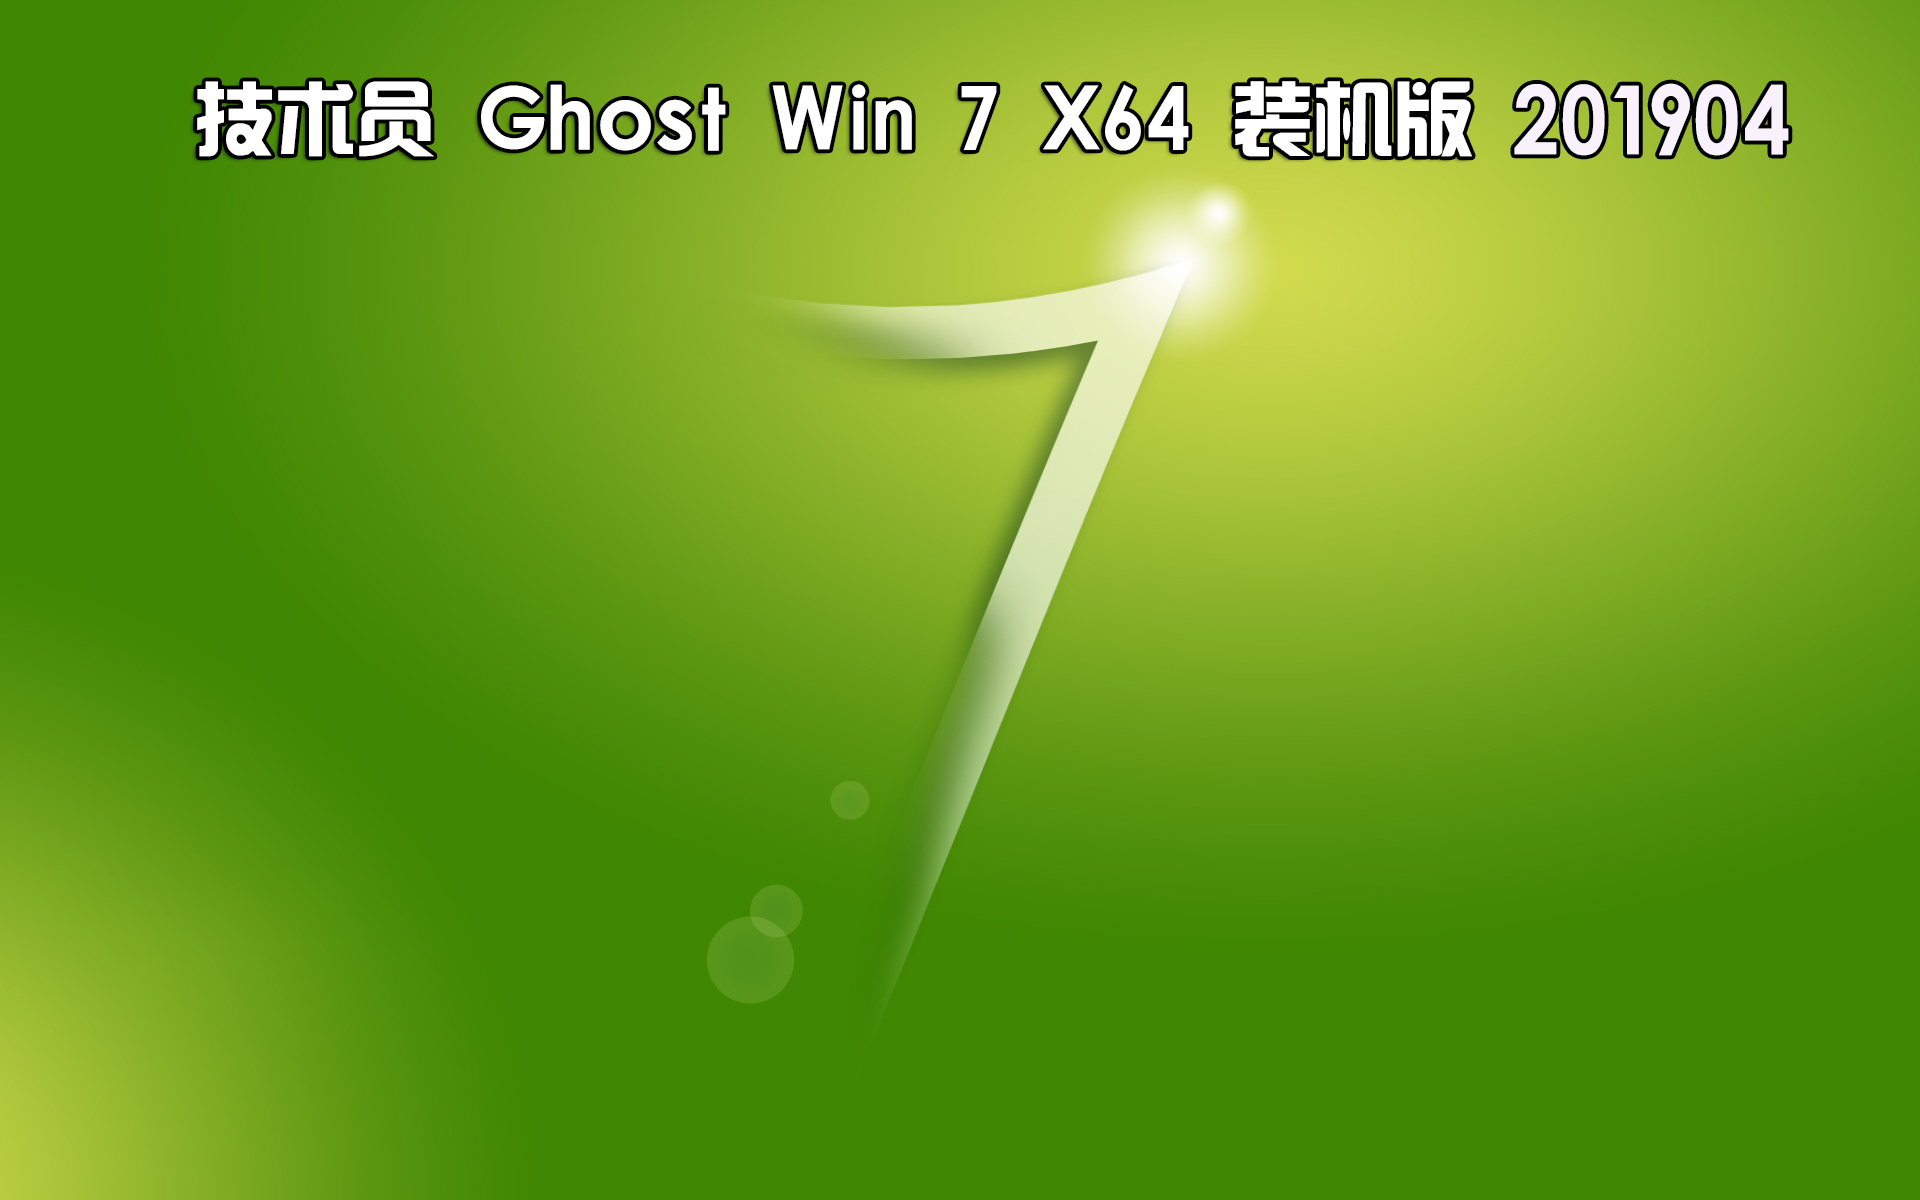 技术员联盟 Ghost Win7 Sp1 x64 装机版 201904